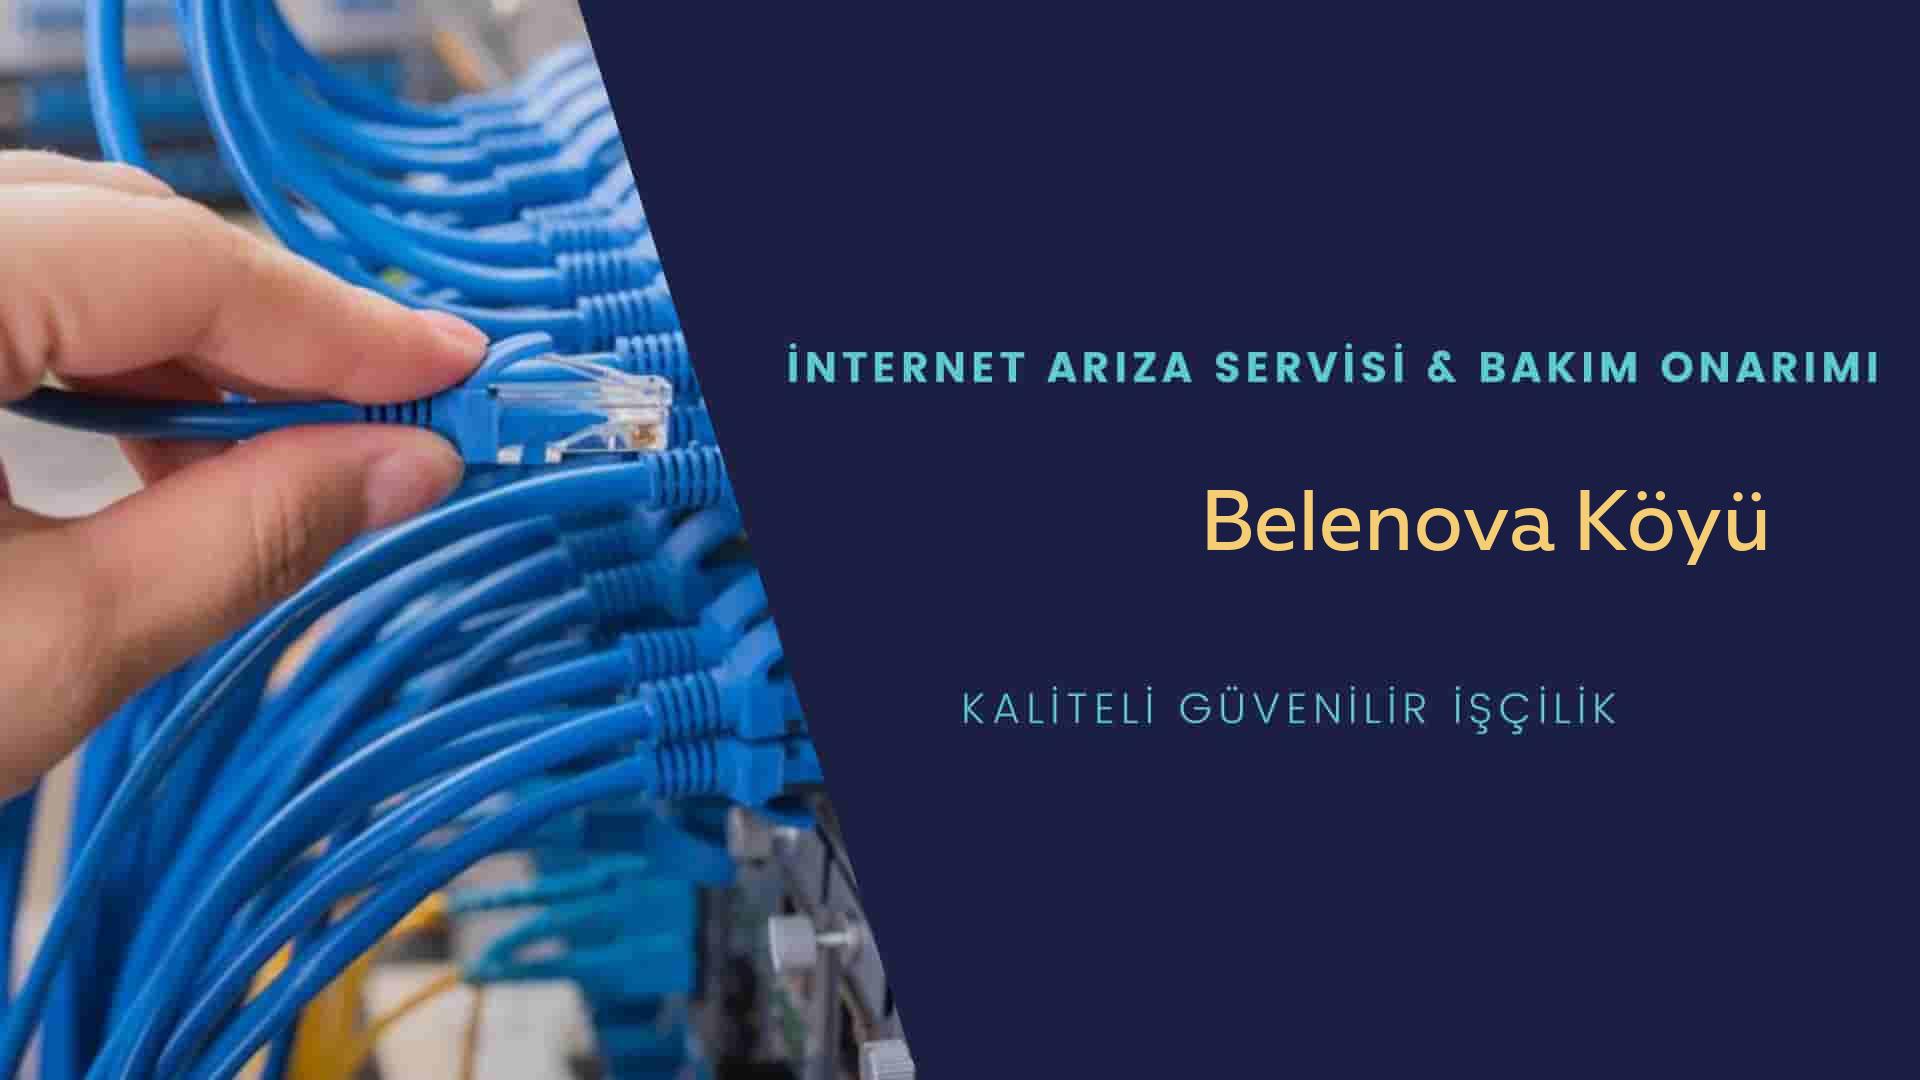 Belenova Köyü internet kablosu çekimi yapan yerler veya elektrikçiler mi? arıyorsunuz doğru yerdesiniz o zaman sizlere 7/24 yardımcı olacak profesyonel ustalarımız bir telefon kadar yakındır size.